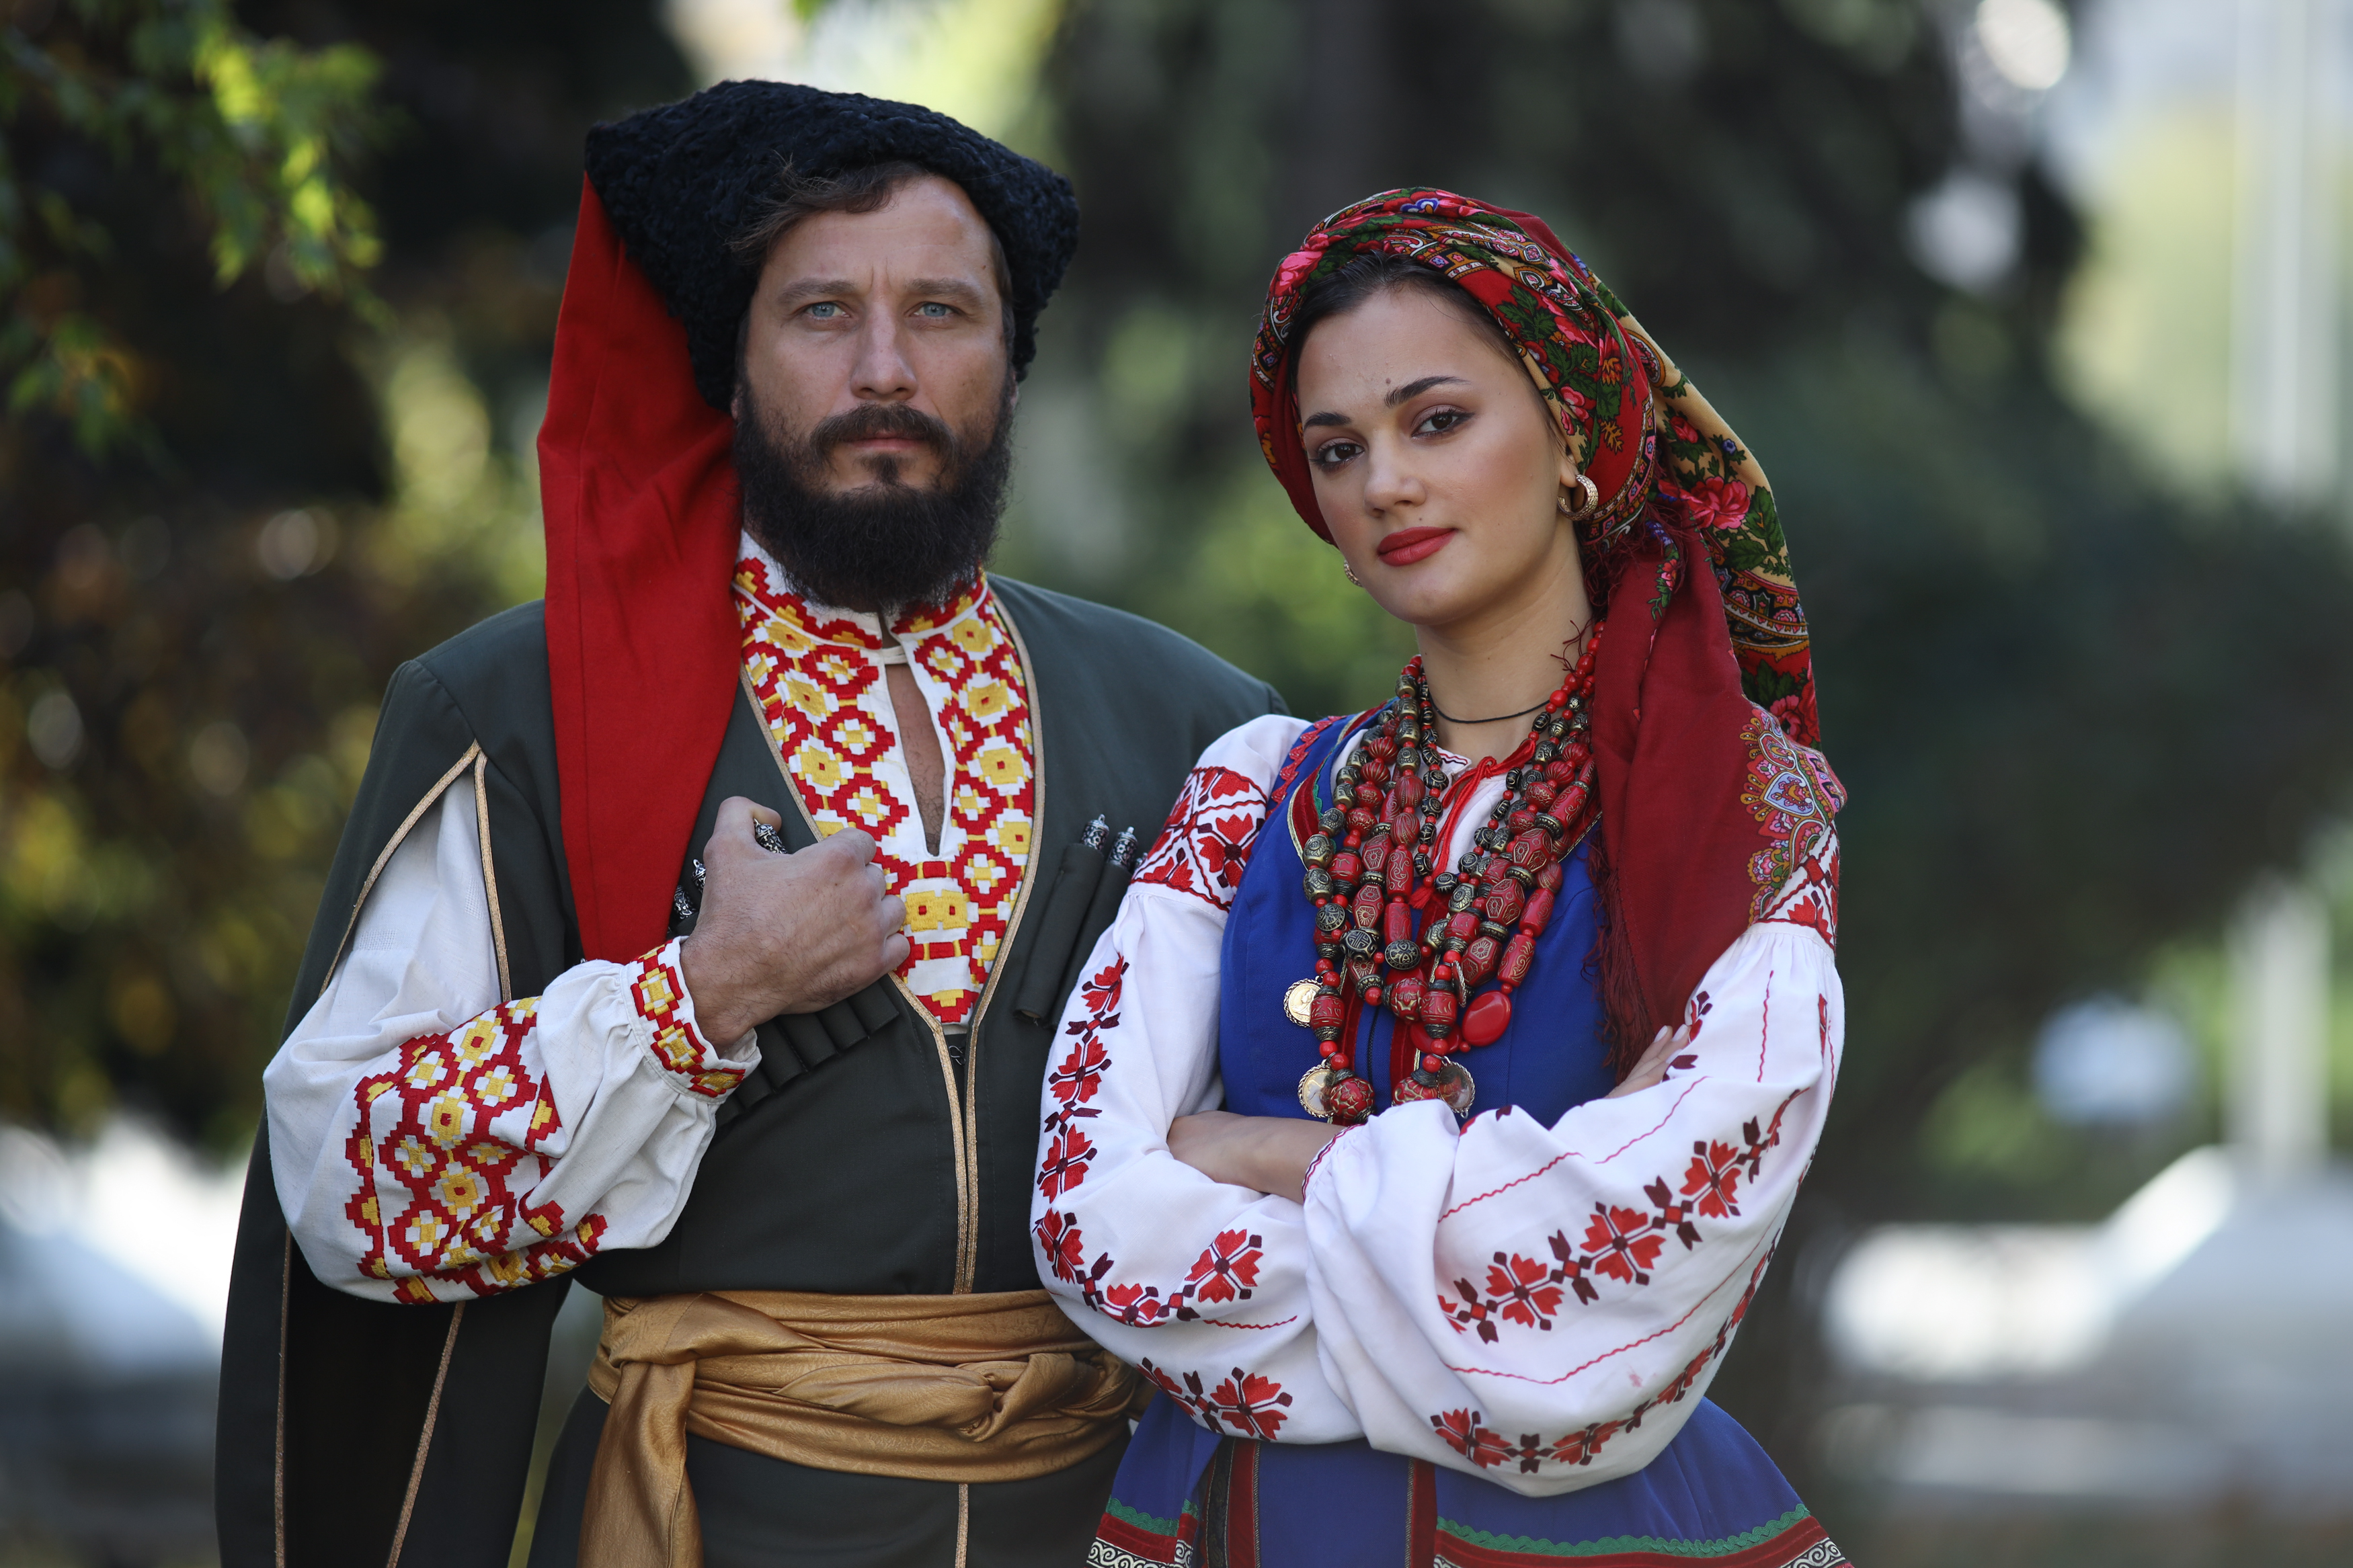 На Кубани пройдет крупнейший в стране фестиваль казачьей культуры